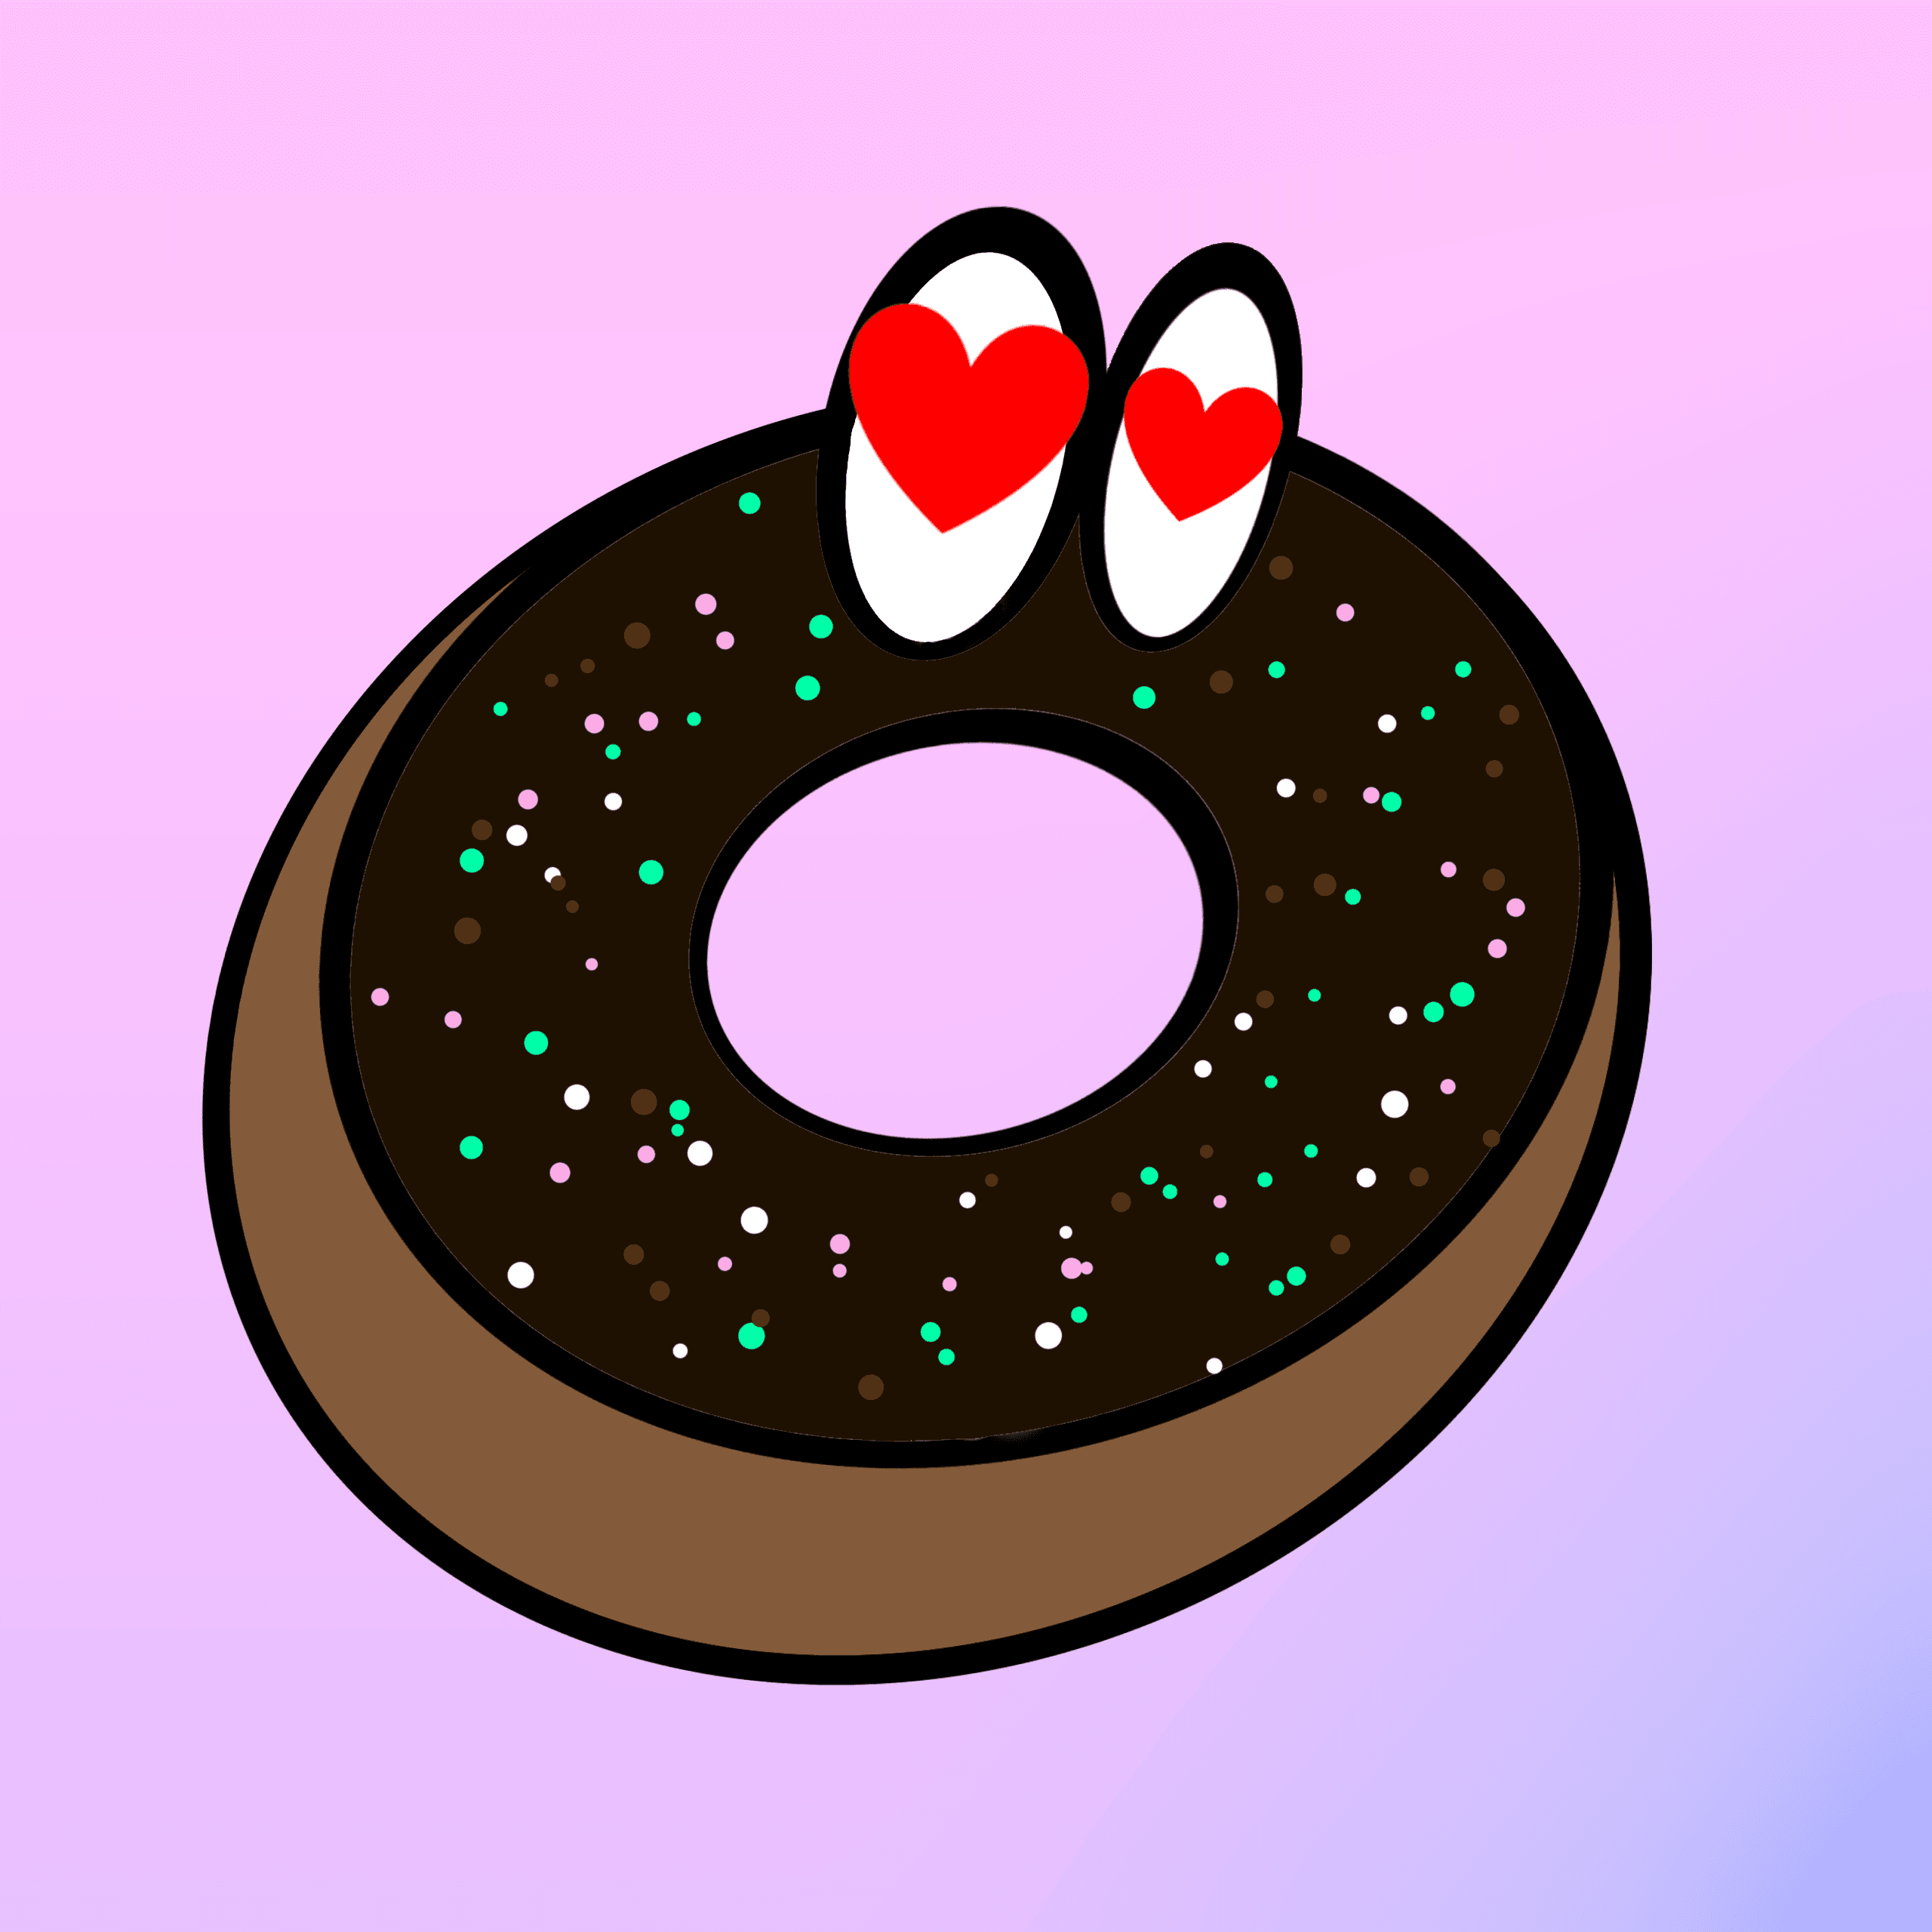 Mintin' Donuts#006